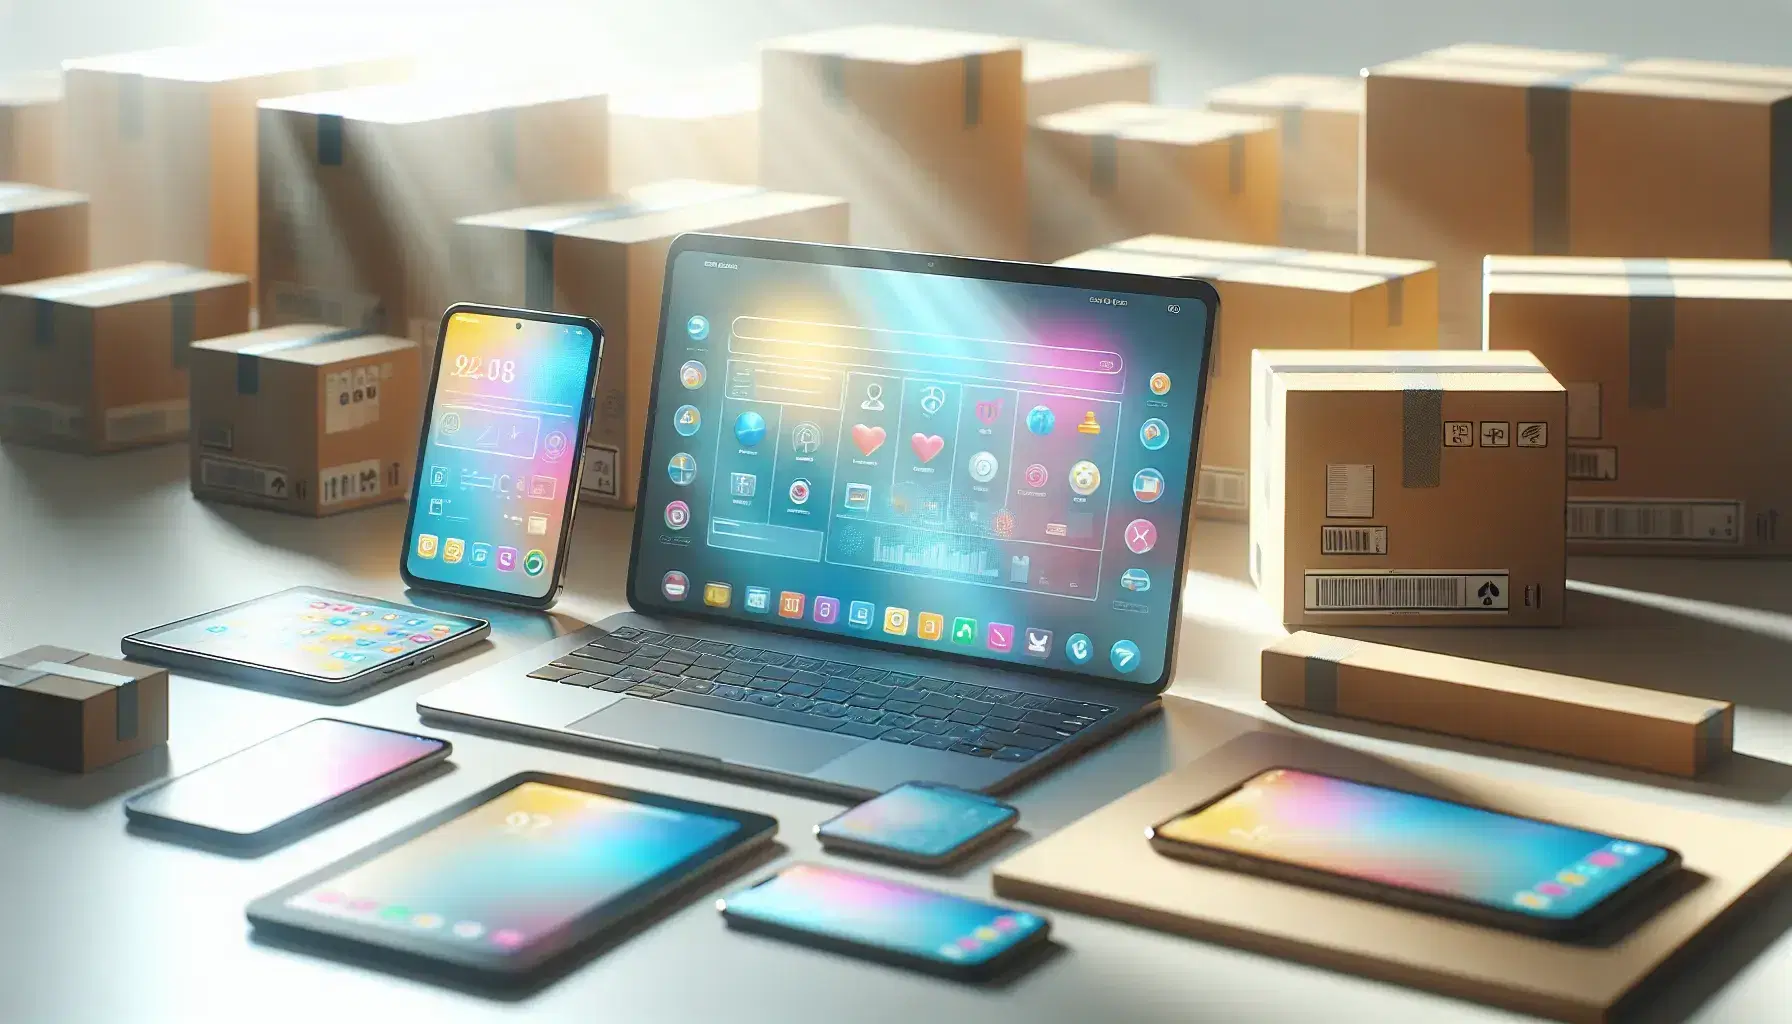 Laptop abierto con interfaz colorida, smartphone vertical y tablet apagado sobre superficie clara, con paquetes desenfocados al fondo, sin marcas visibles.